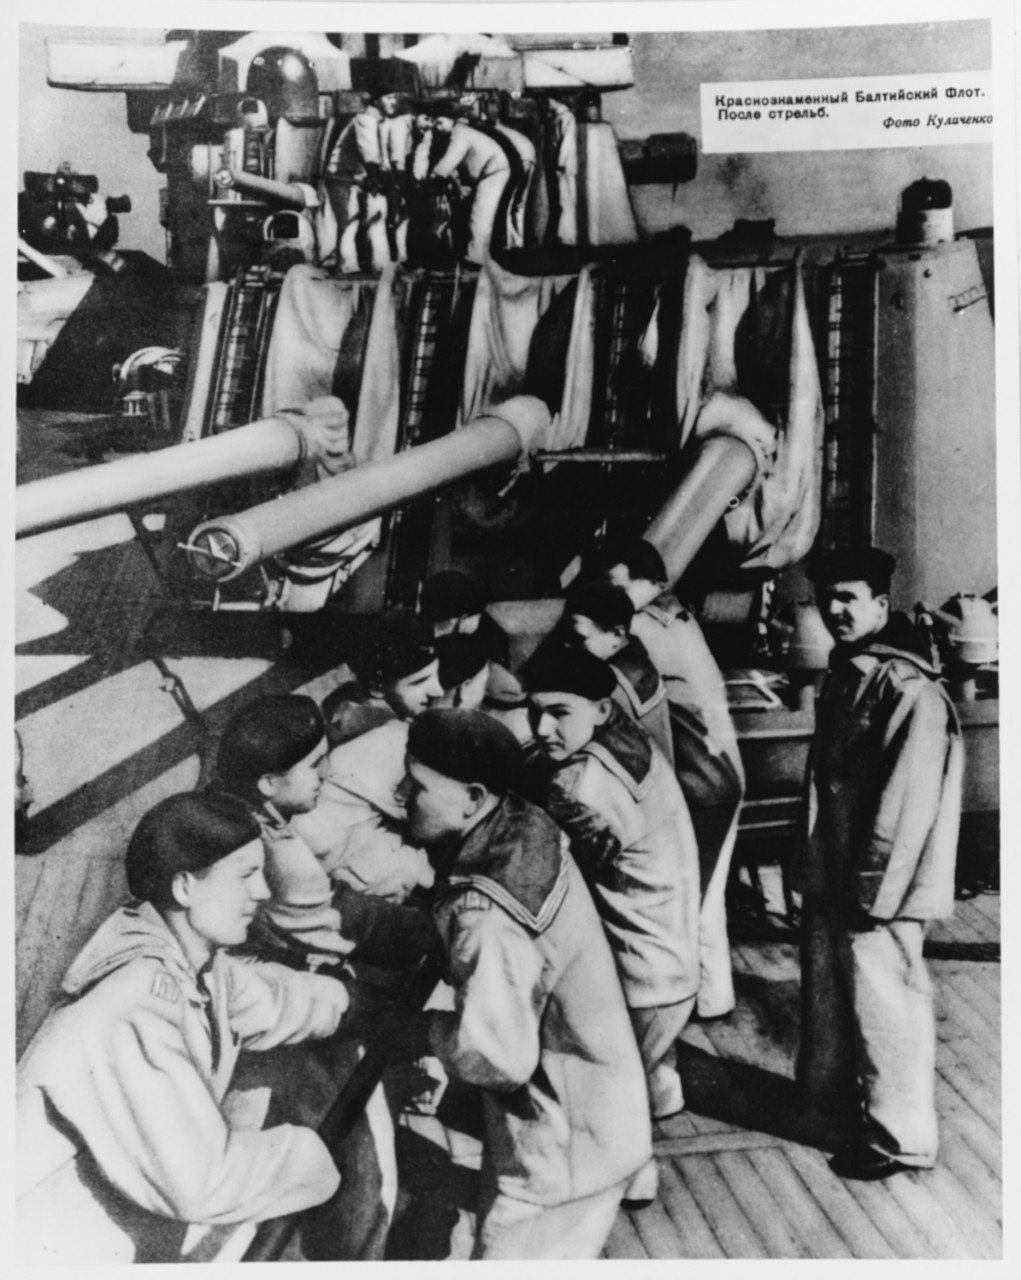 Soviet Sailors